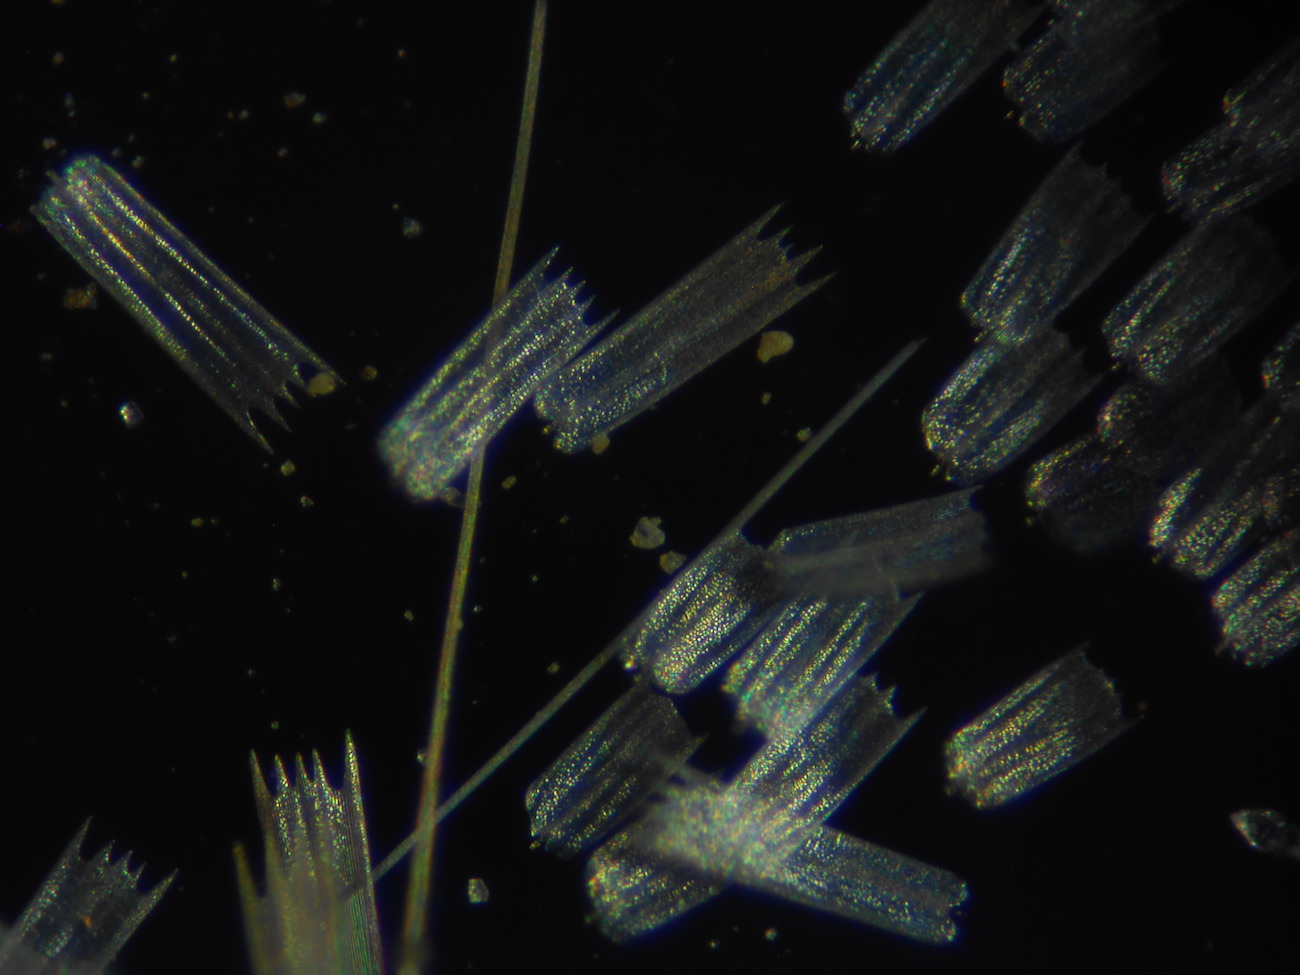 蝶の鱗粉のミクロ観察顕微鏡写真